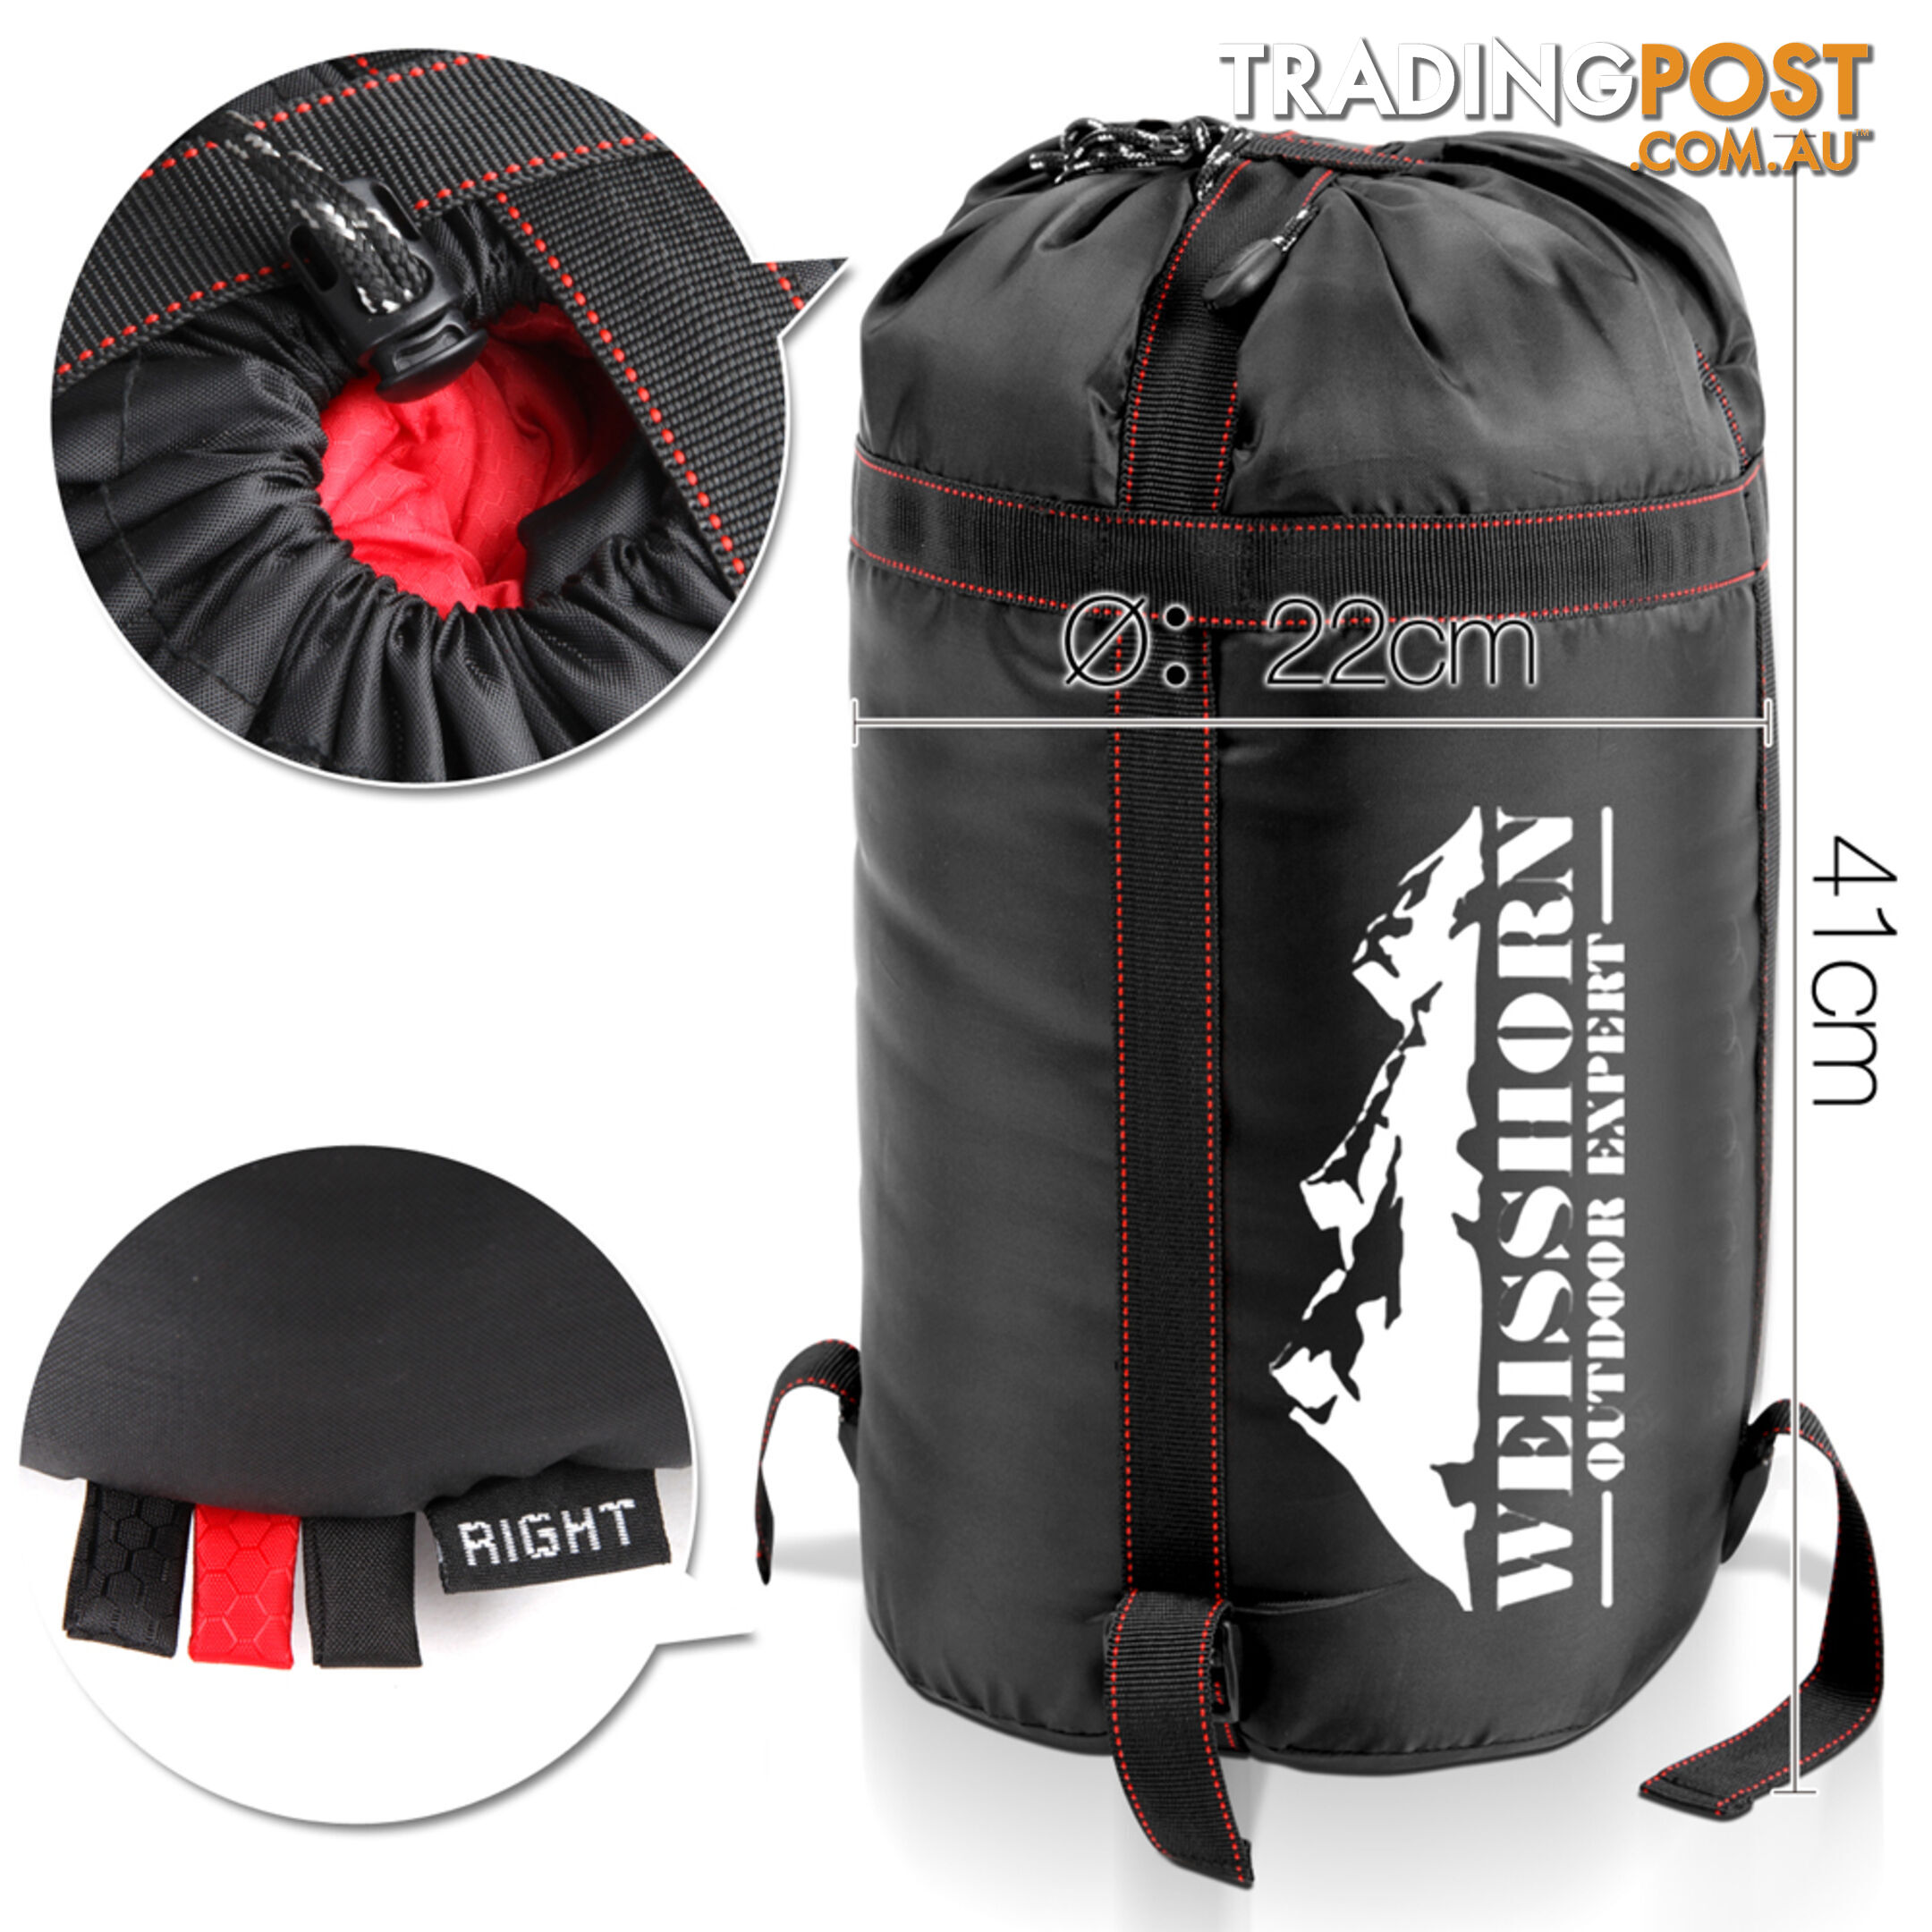 Camping Envelope Sleeping Bag Single Red Black